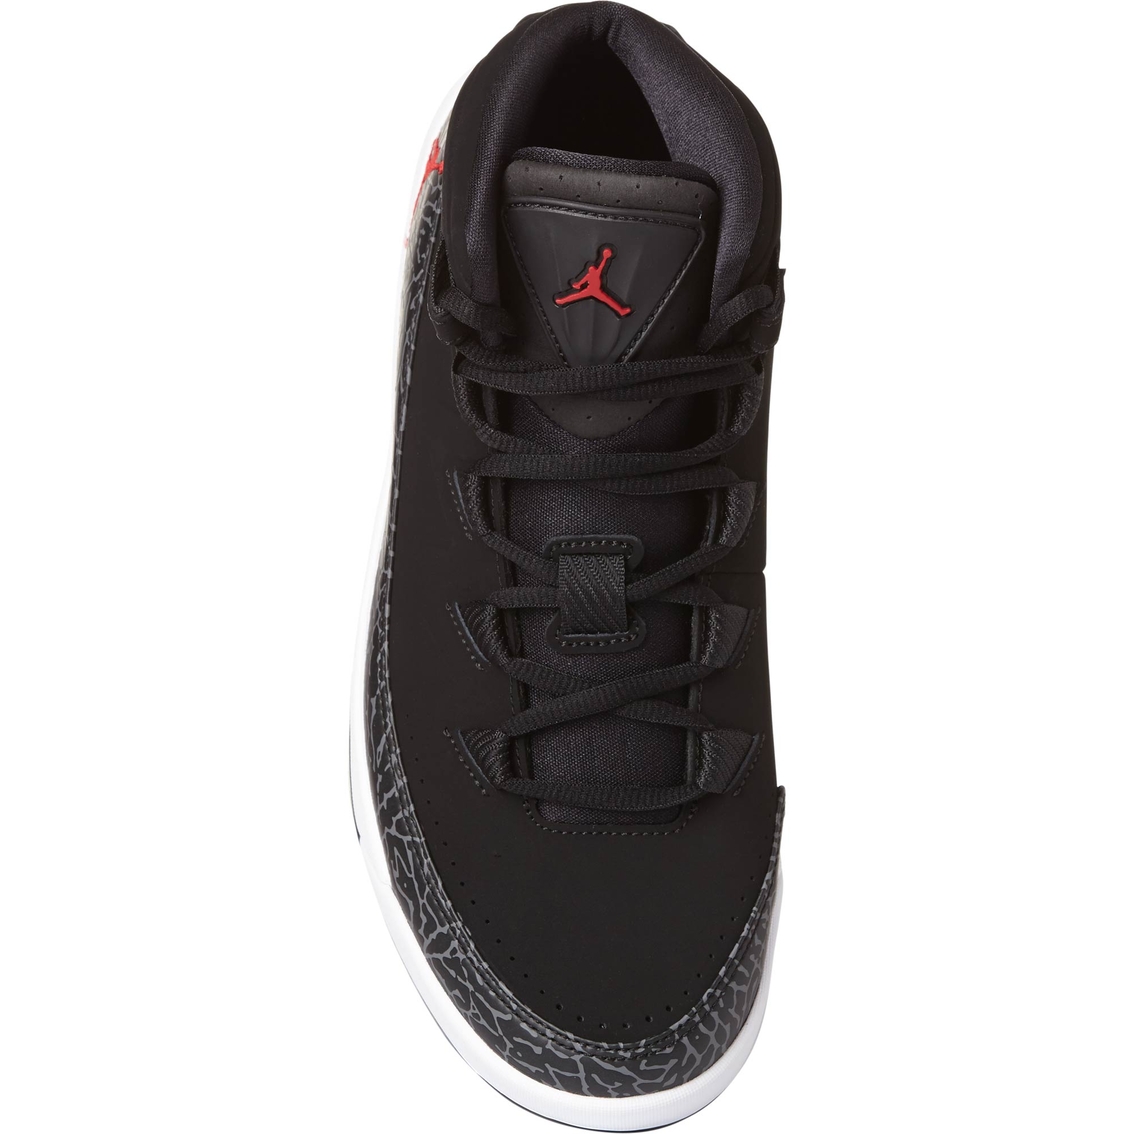 Jordan Air Deluxe Men's Basketball Shoes - Image 5 of 5